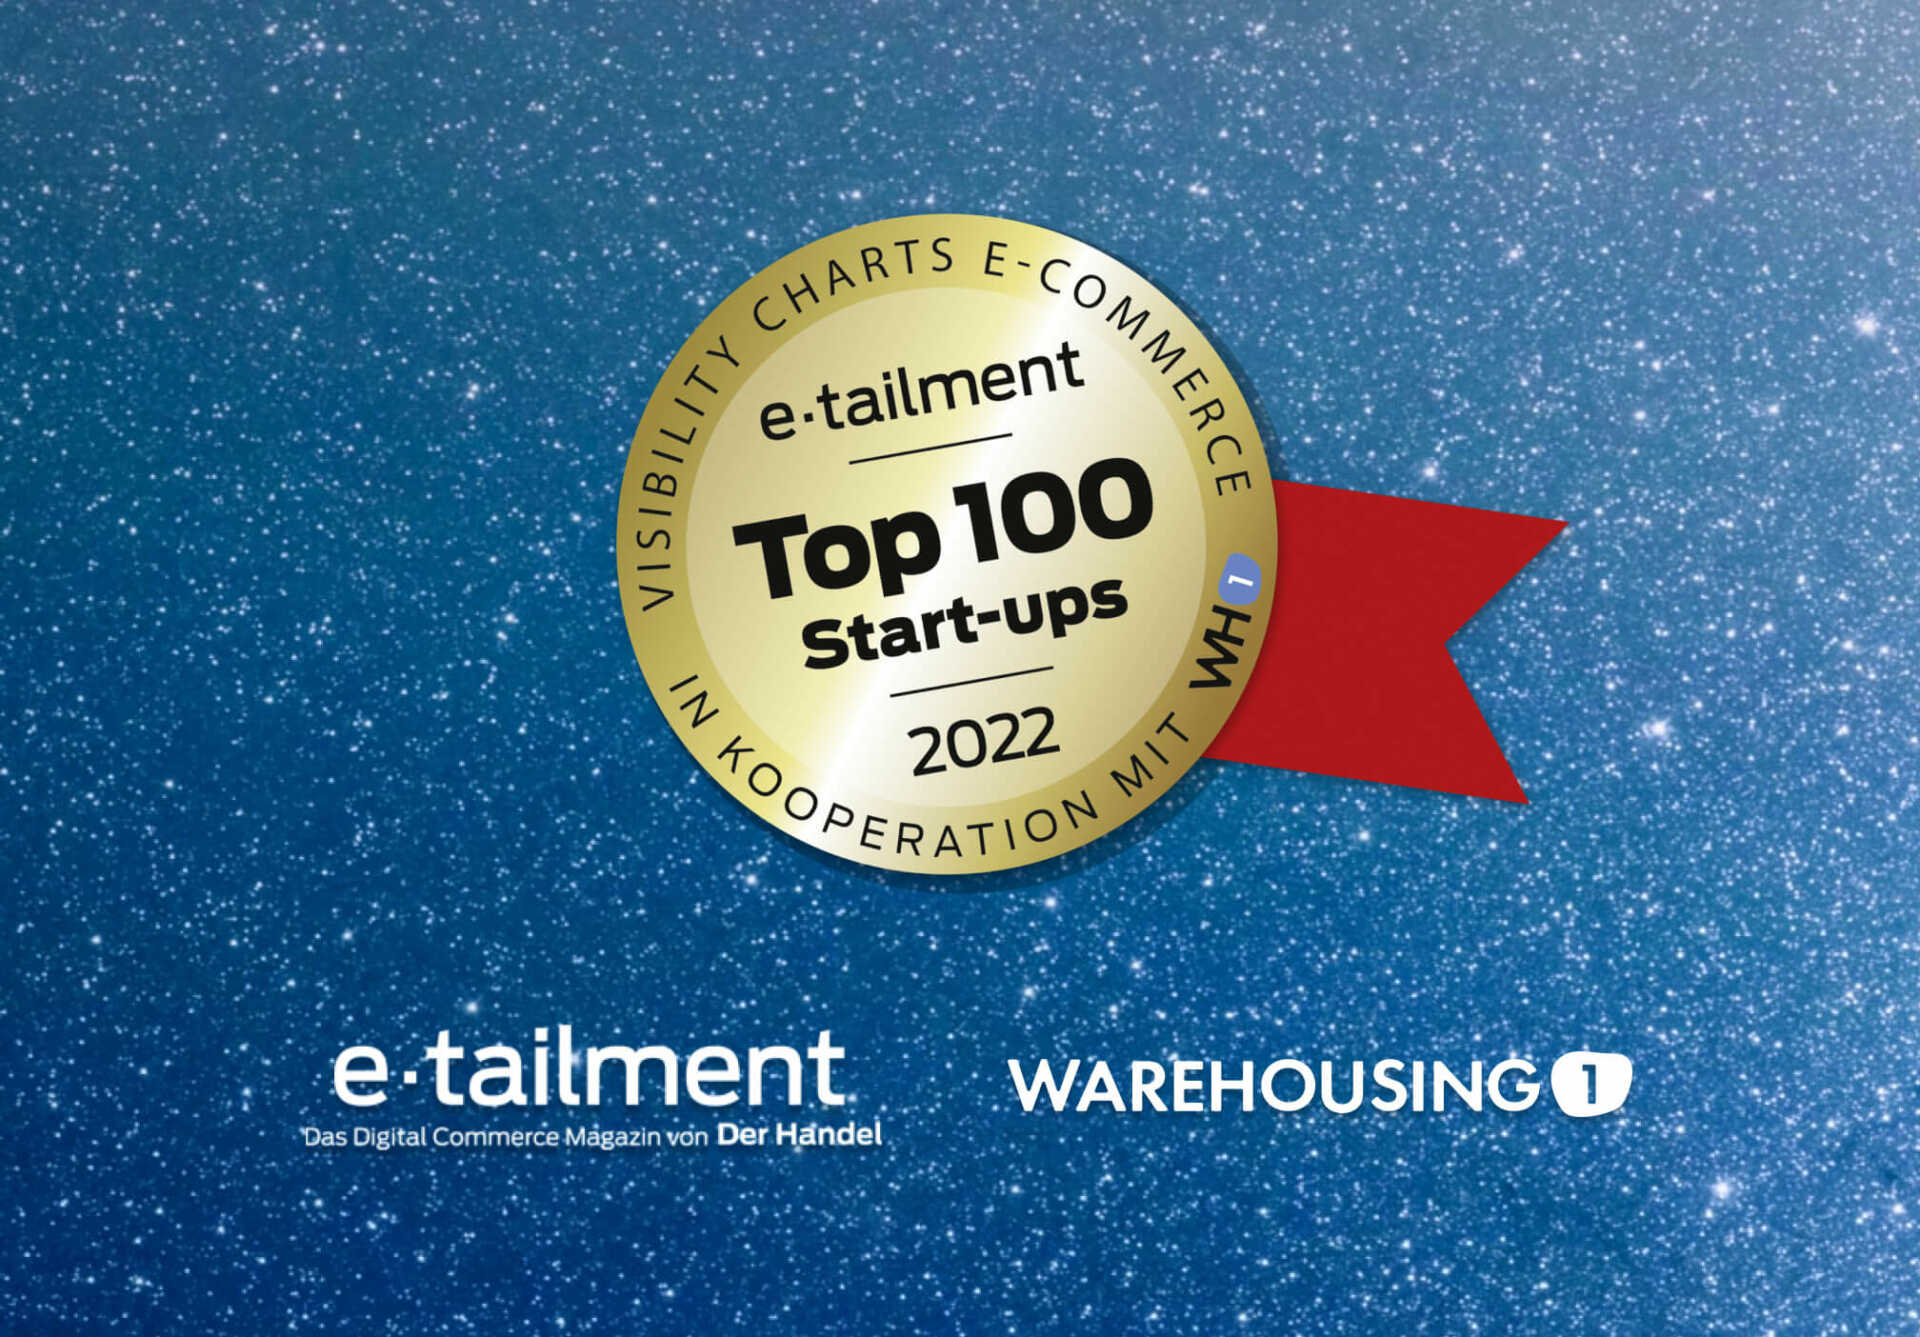 Warehousing1 und etailment ermitteln die Top 100 E-Commerce Startups